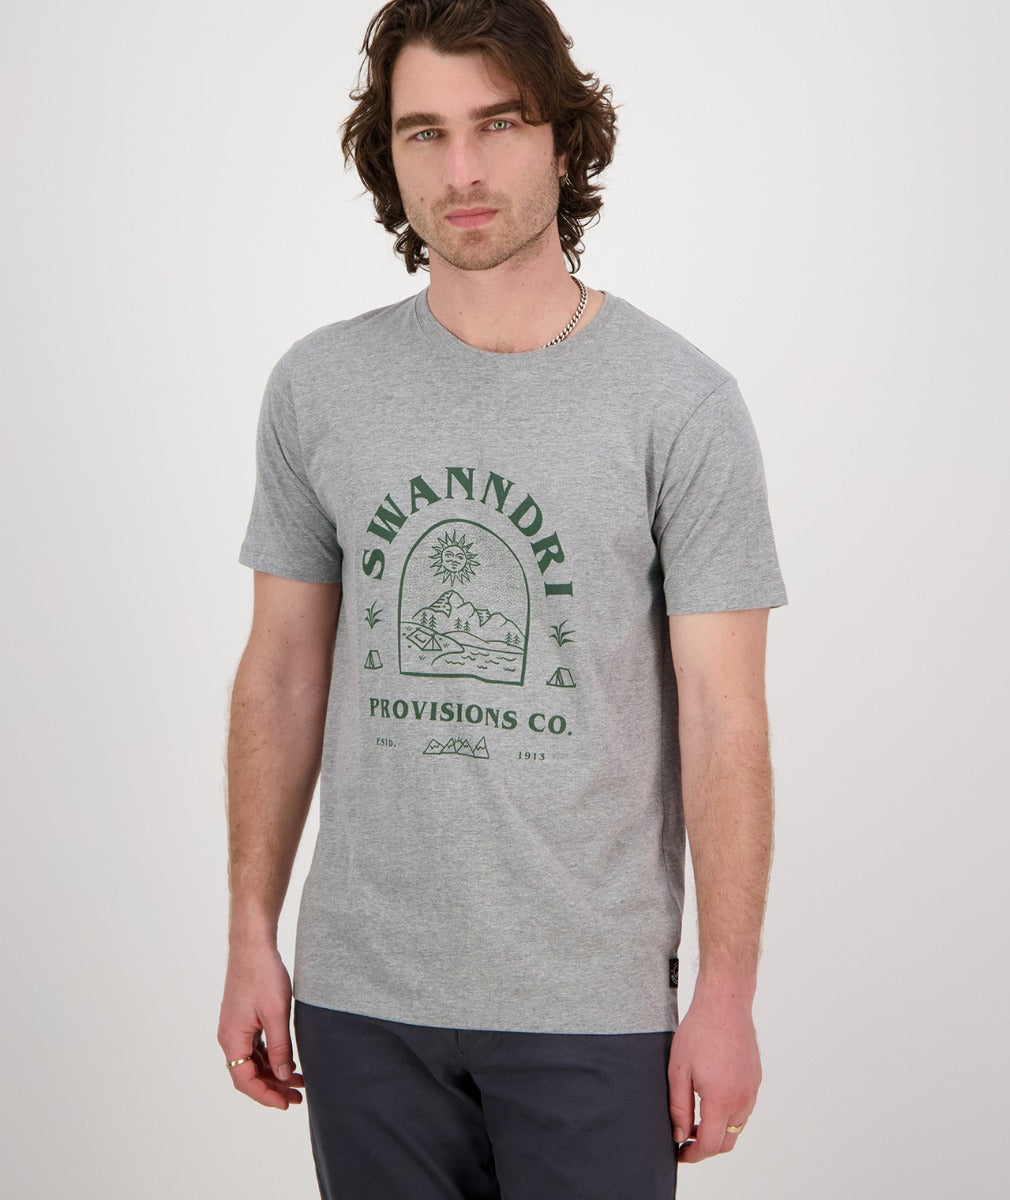 Swanndri Mens Trail T shirt - Grey Marle/Forest